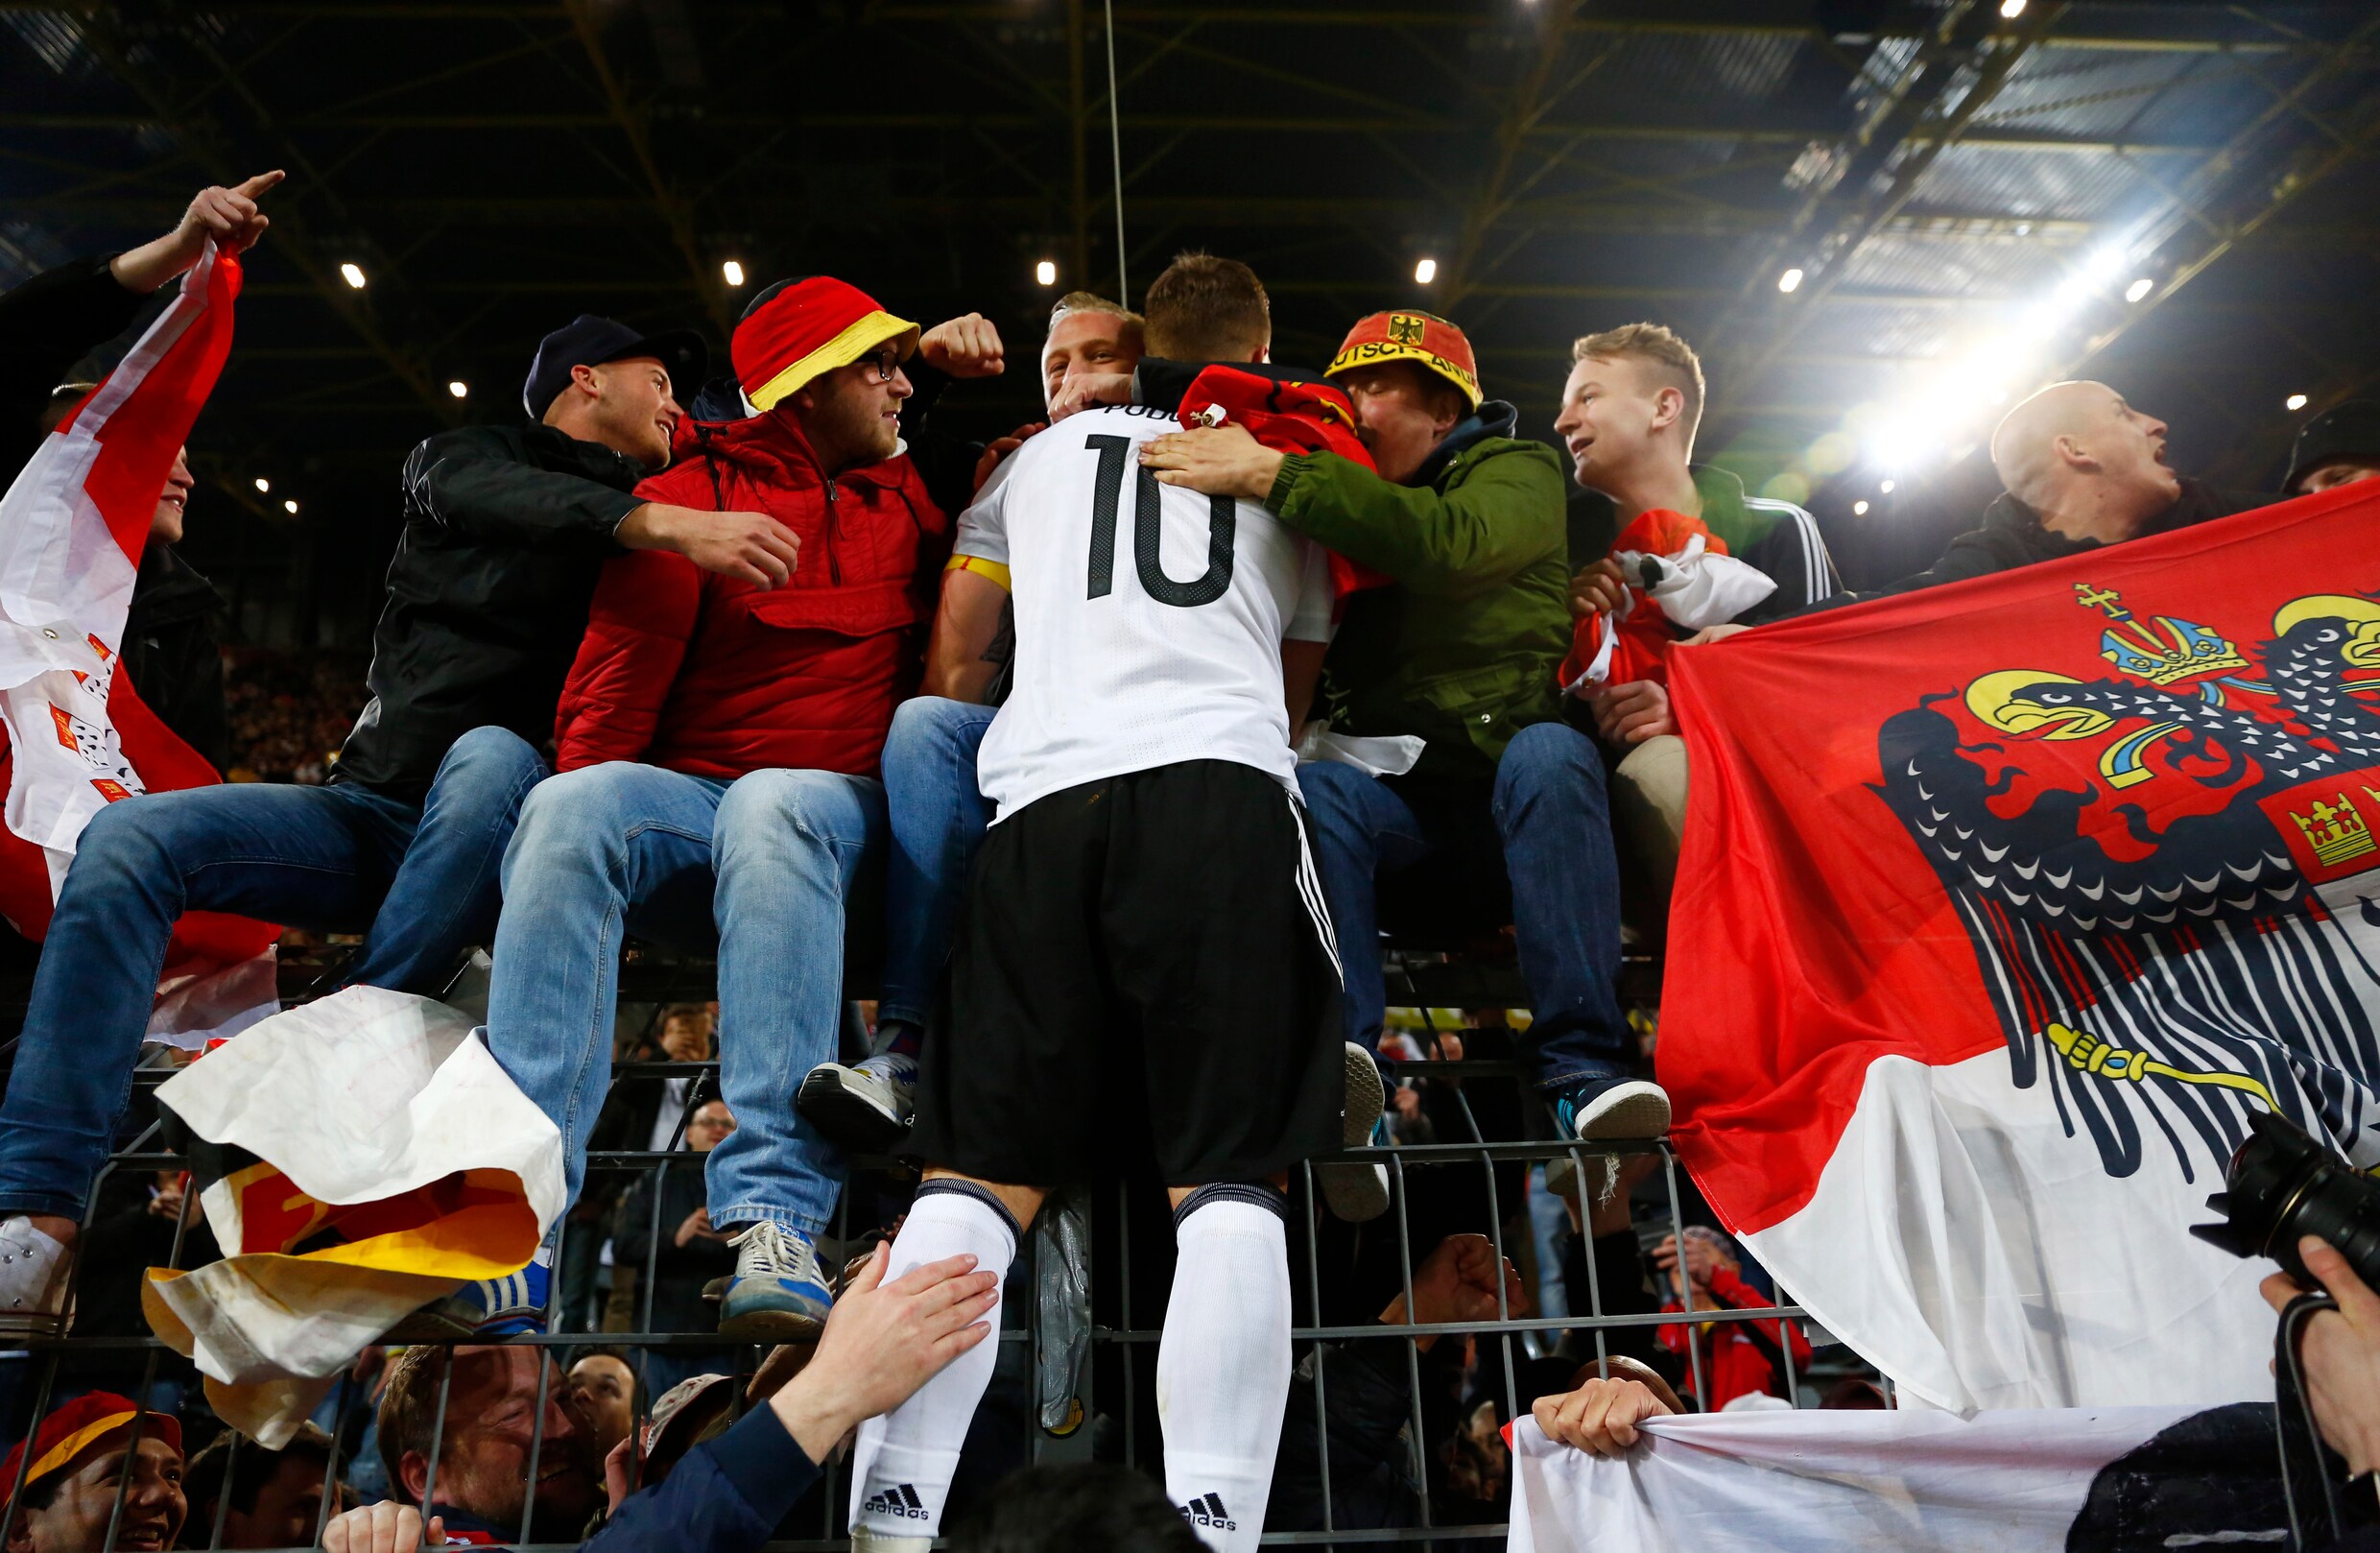 Engeland-fans zullen zwaar gestraft worden na 'respectloos gedrag' tijdens vriendschappelijke match